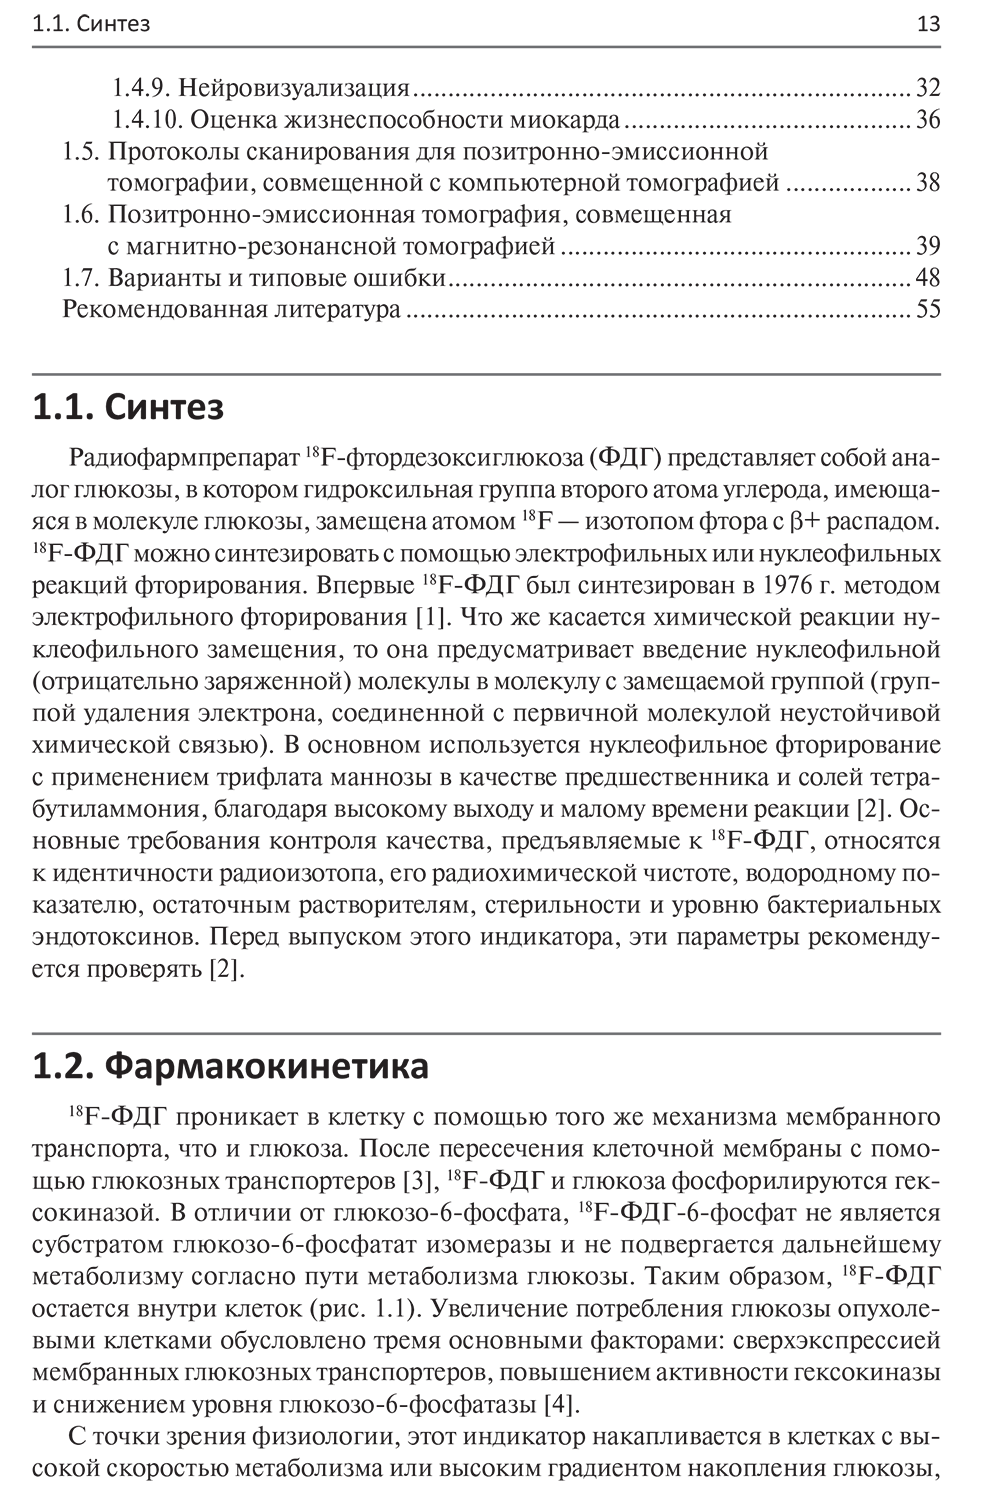  Пример страницы из книги "Радиофармпрепараты. Руководство по ПЭТ-КТ и ПЭТ-МРТ" - Калабрия Ф, Скиллачи О.